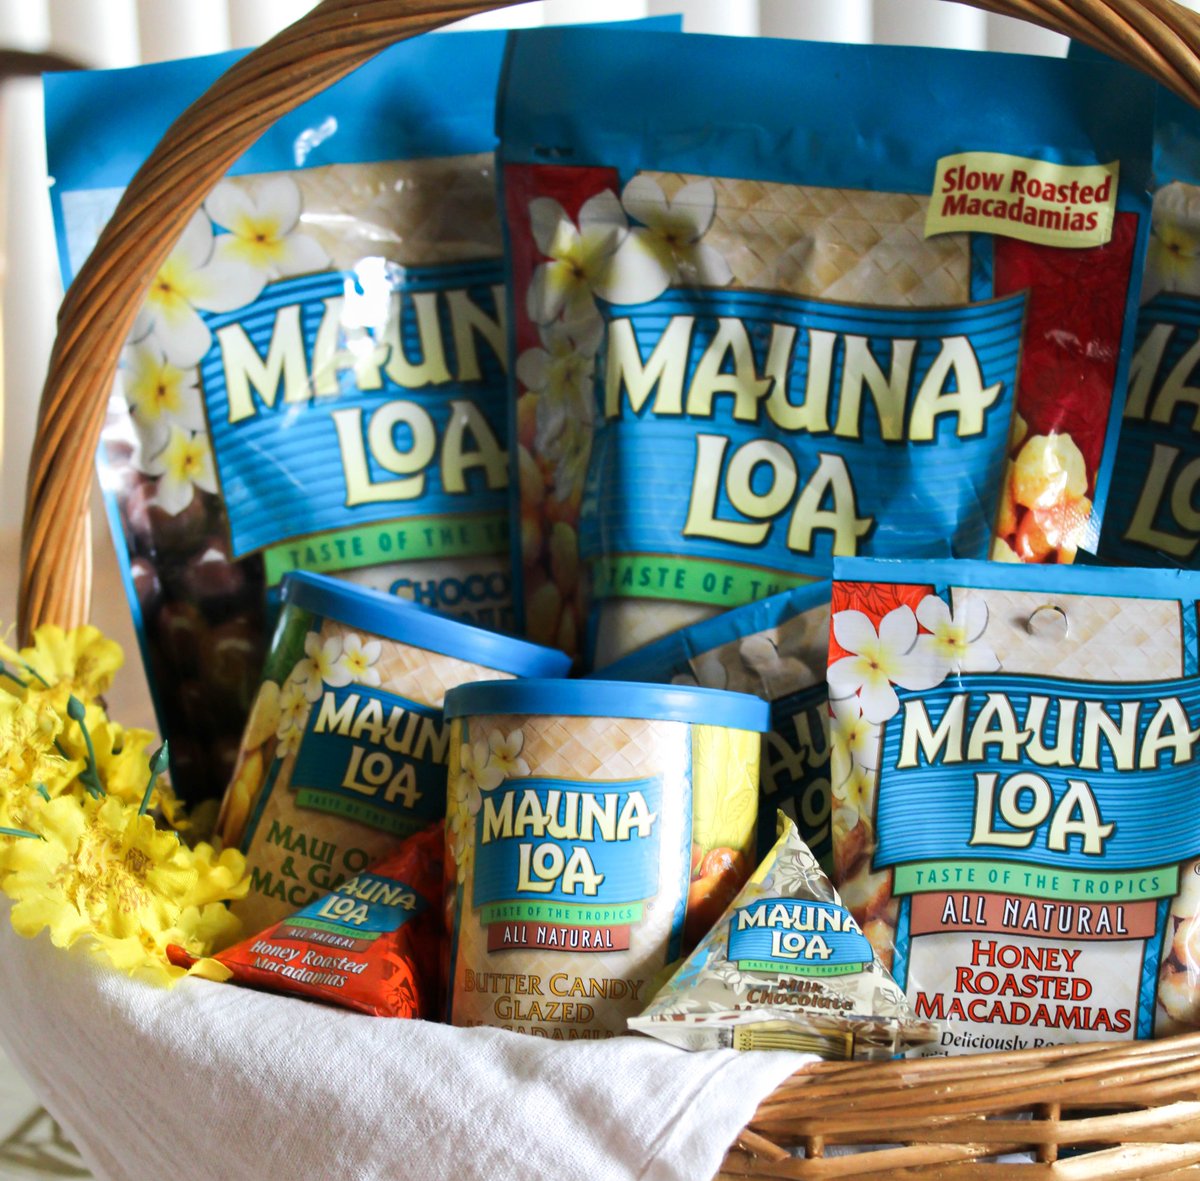 Let someone know you’re NUTS about them with a basket full of Mauna Loa 😀 #MaunaLoaMacNuts #ShareAloha